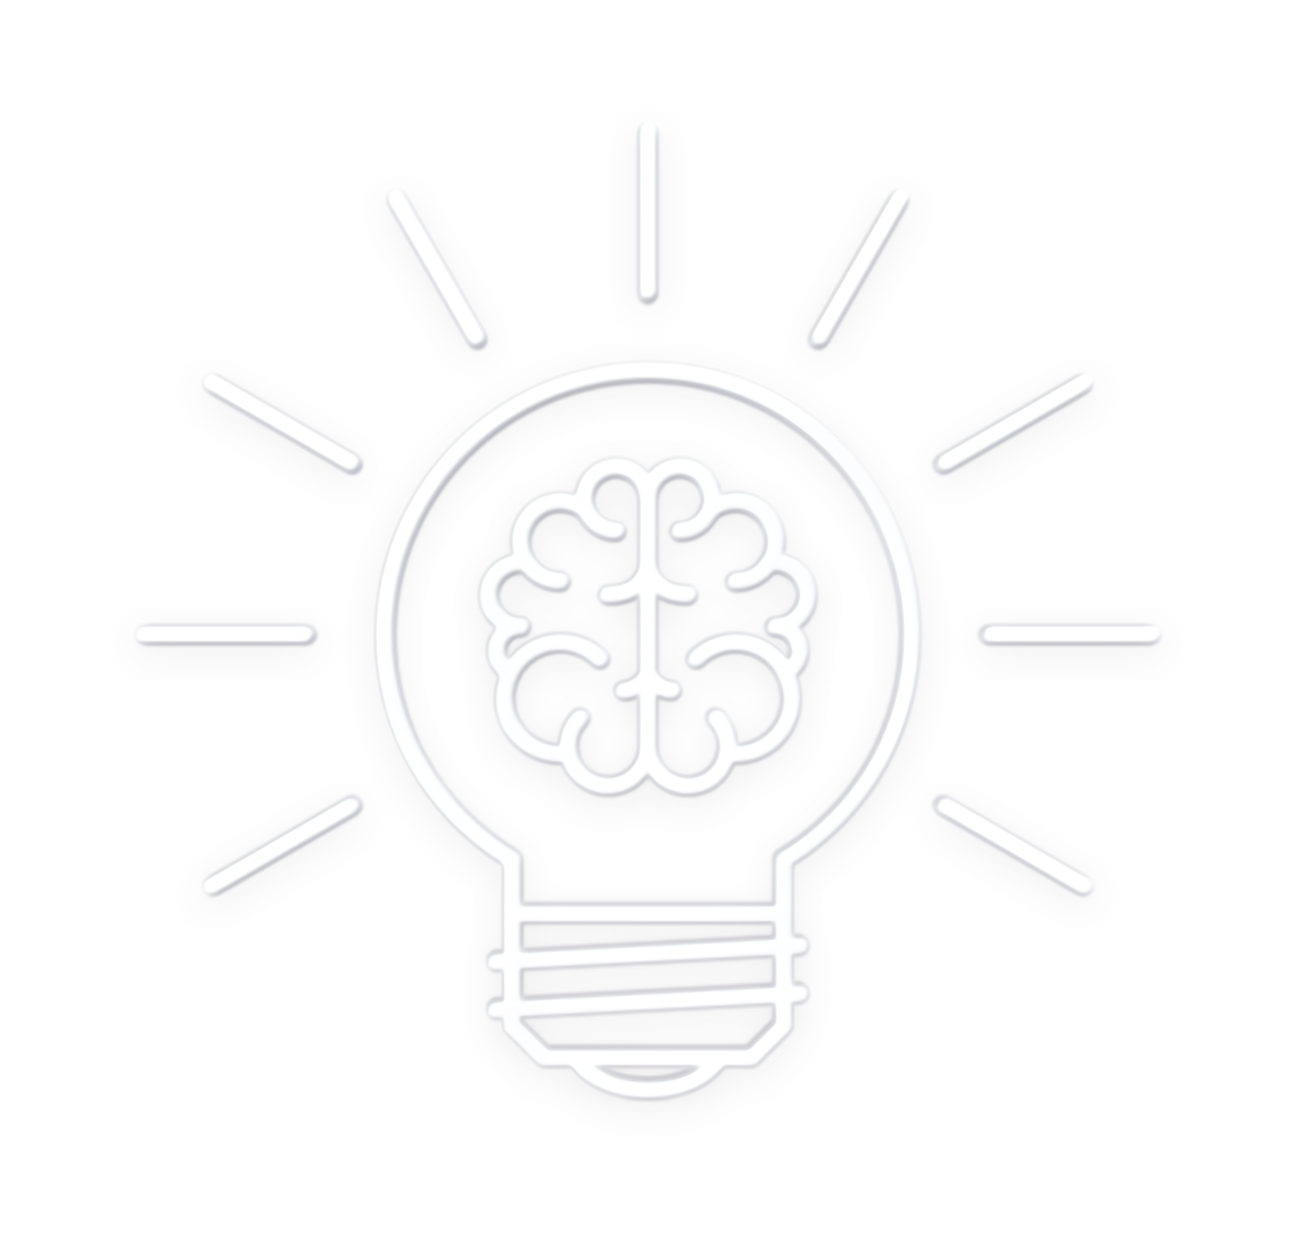 Logo: light bulb and brain inside